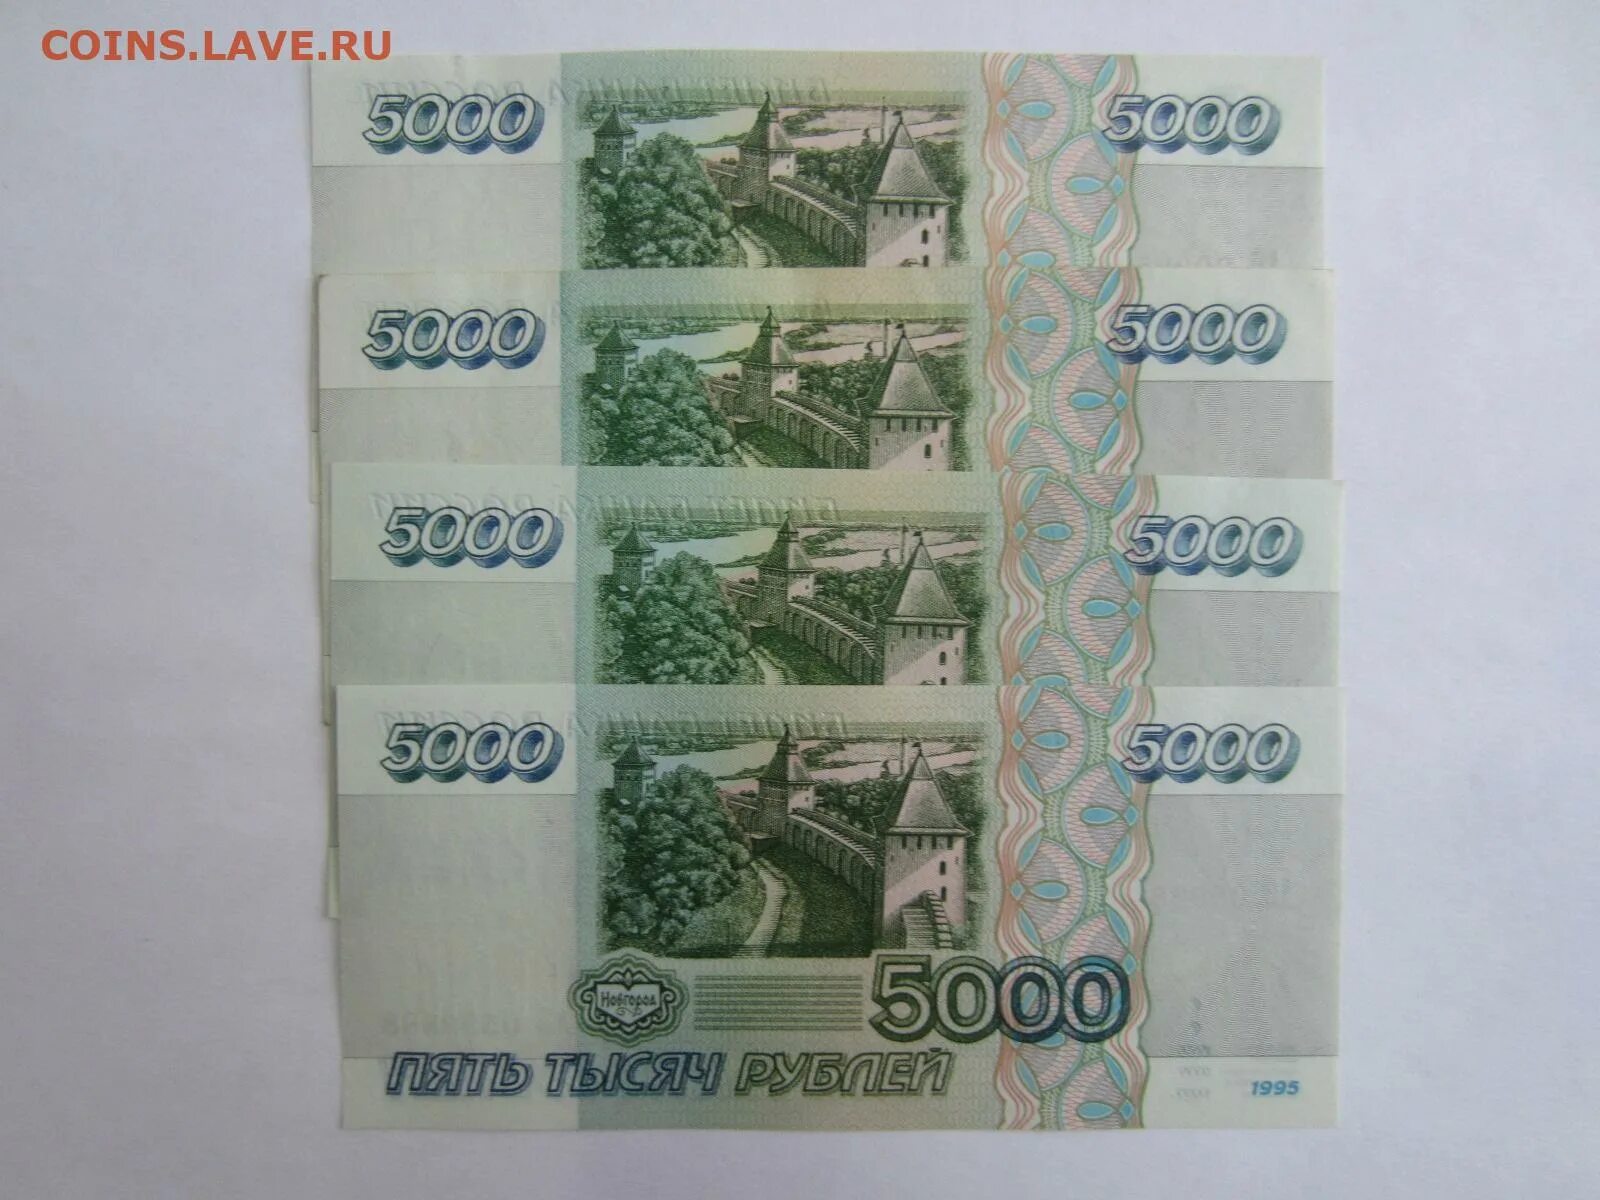 5000 рублей 1995. 50 0000 Рублей 1995. 1 Рубль 1995. 10 000 Руб 1995.